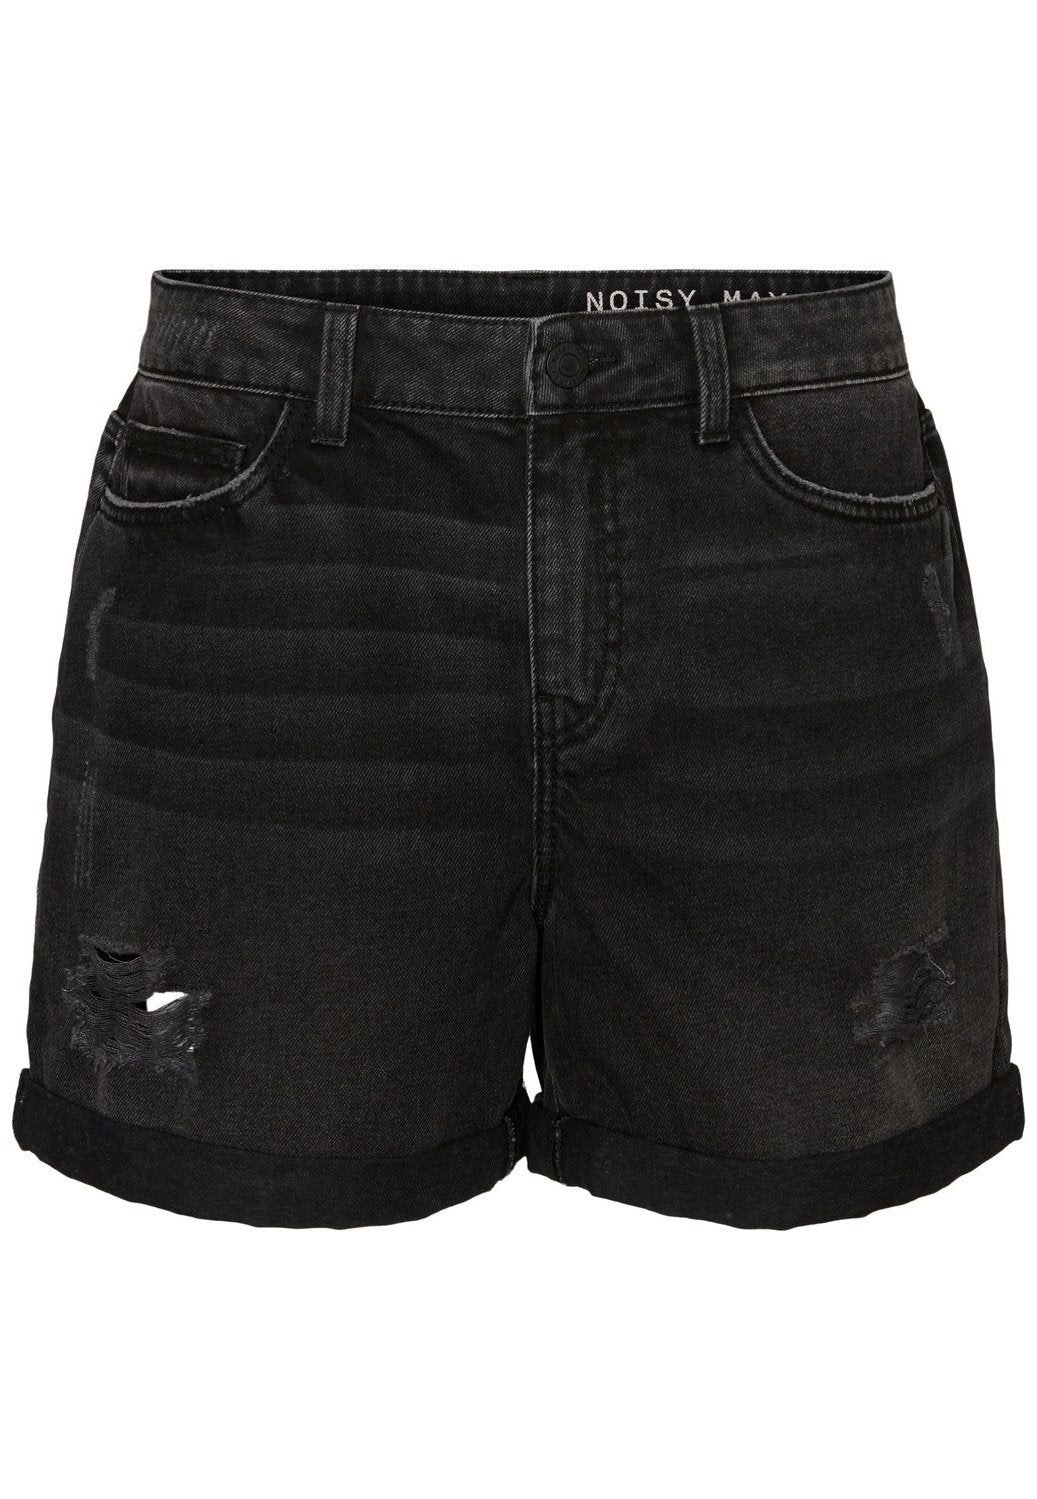 Noisy May - Smiley Black Denim - Shorts